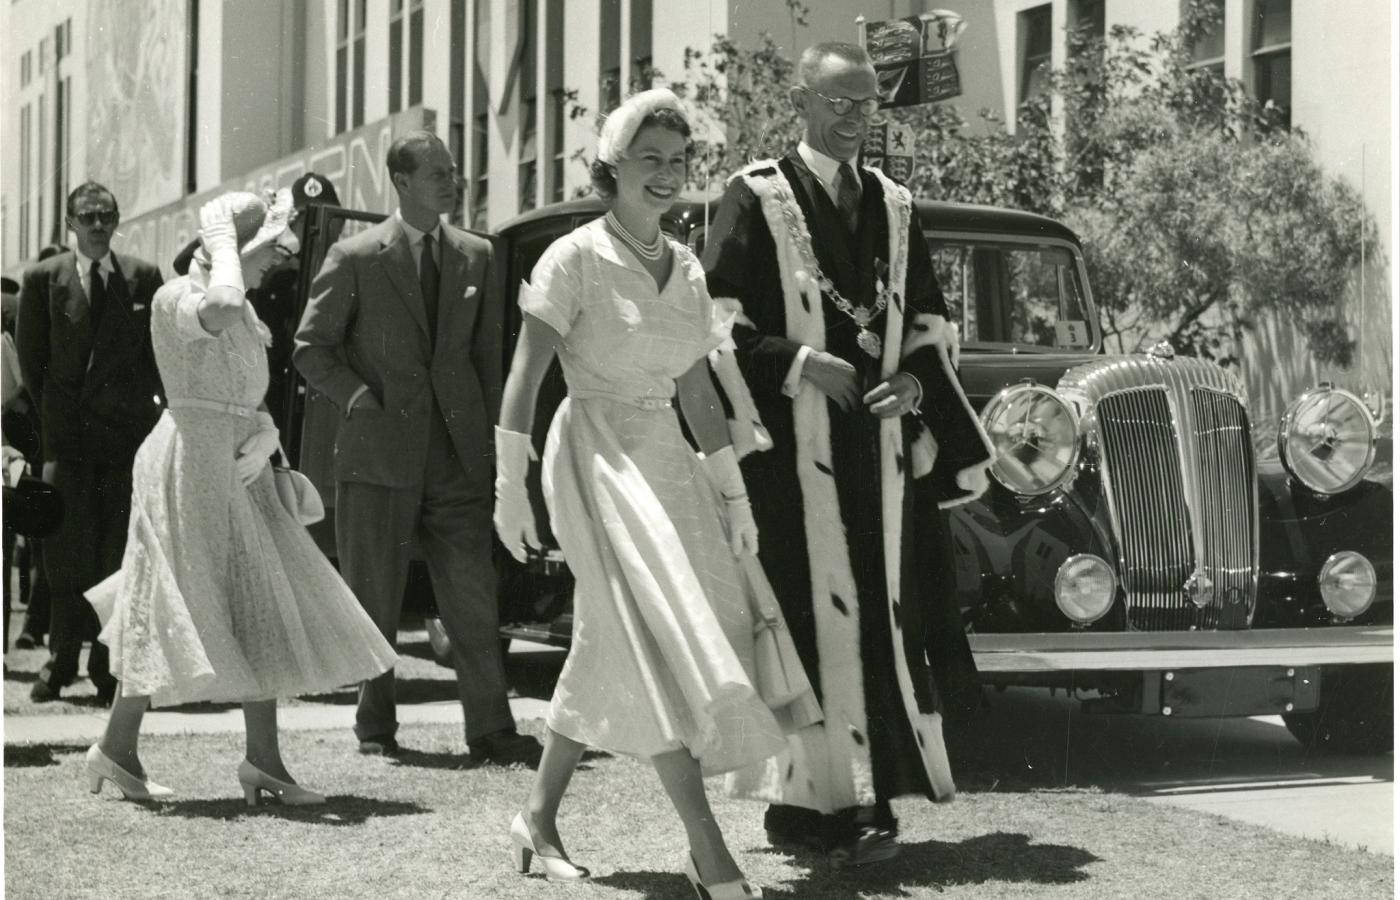 <b>Elżbieta II</b> była drugim monarchą w historii Wielkiej Brytanii, który przebywał poza granicami kraju, gdy dowiedział się o śmierci swojego poprzednika.
<br></br>
W 1952 roku, kiedy jeszcze jako księżniczka Elżbieta udała się z mężem w państwową podróż do Australii i Nowej Zelandii, zmarł król Jerzy VI. Elżbieta do kraju wróciła już jako królowa.